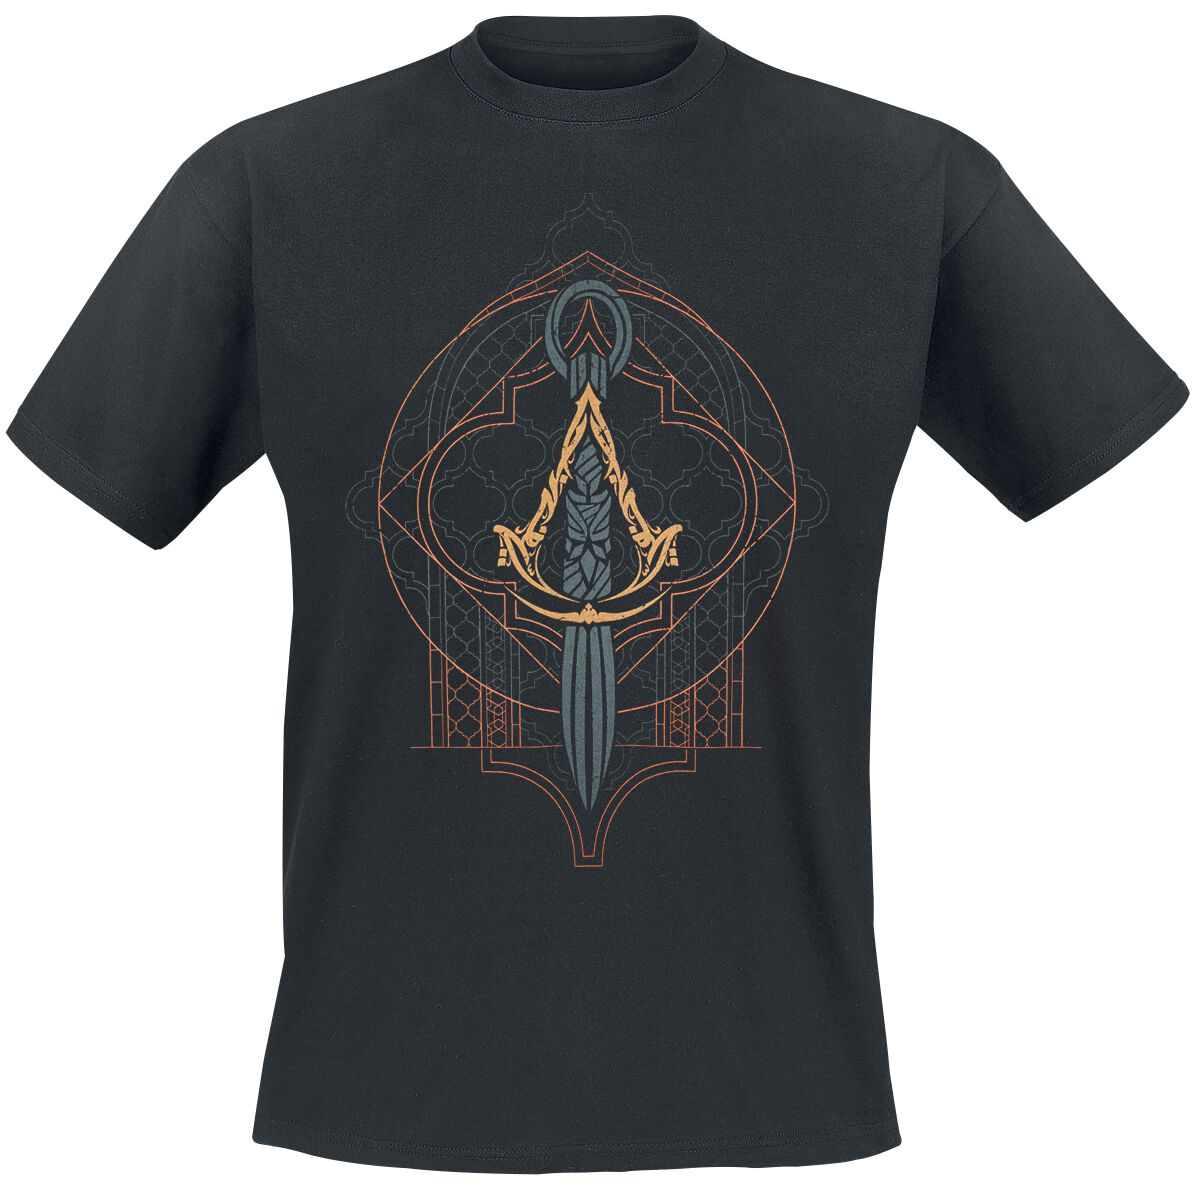 Assassin`s Creed - Gaming T-Shirt - Mirage - Emblem - S bis XXL - für Männer - Größe XL - schwarz  - EMP exklusives Merchandise!